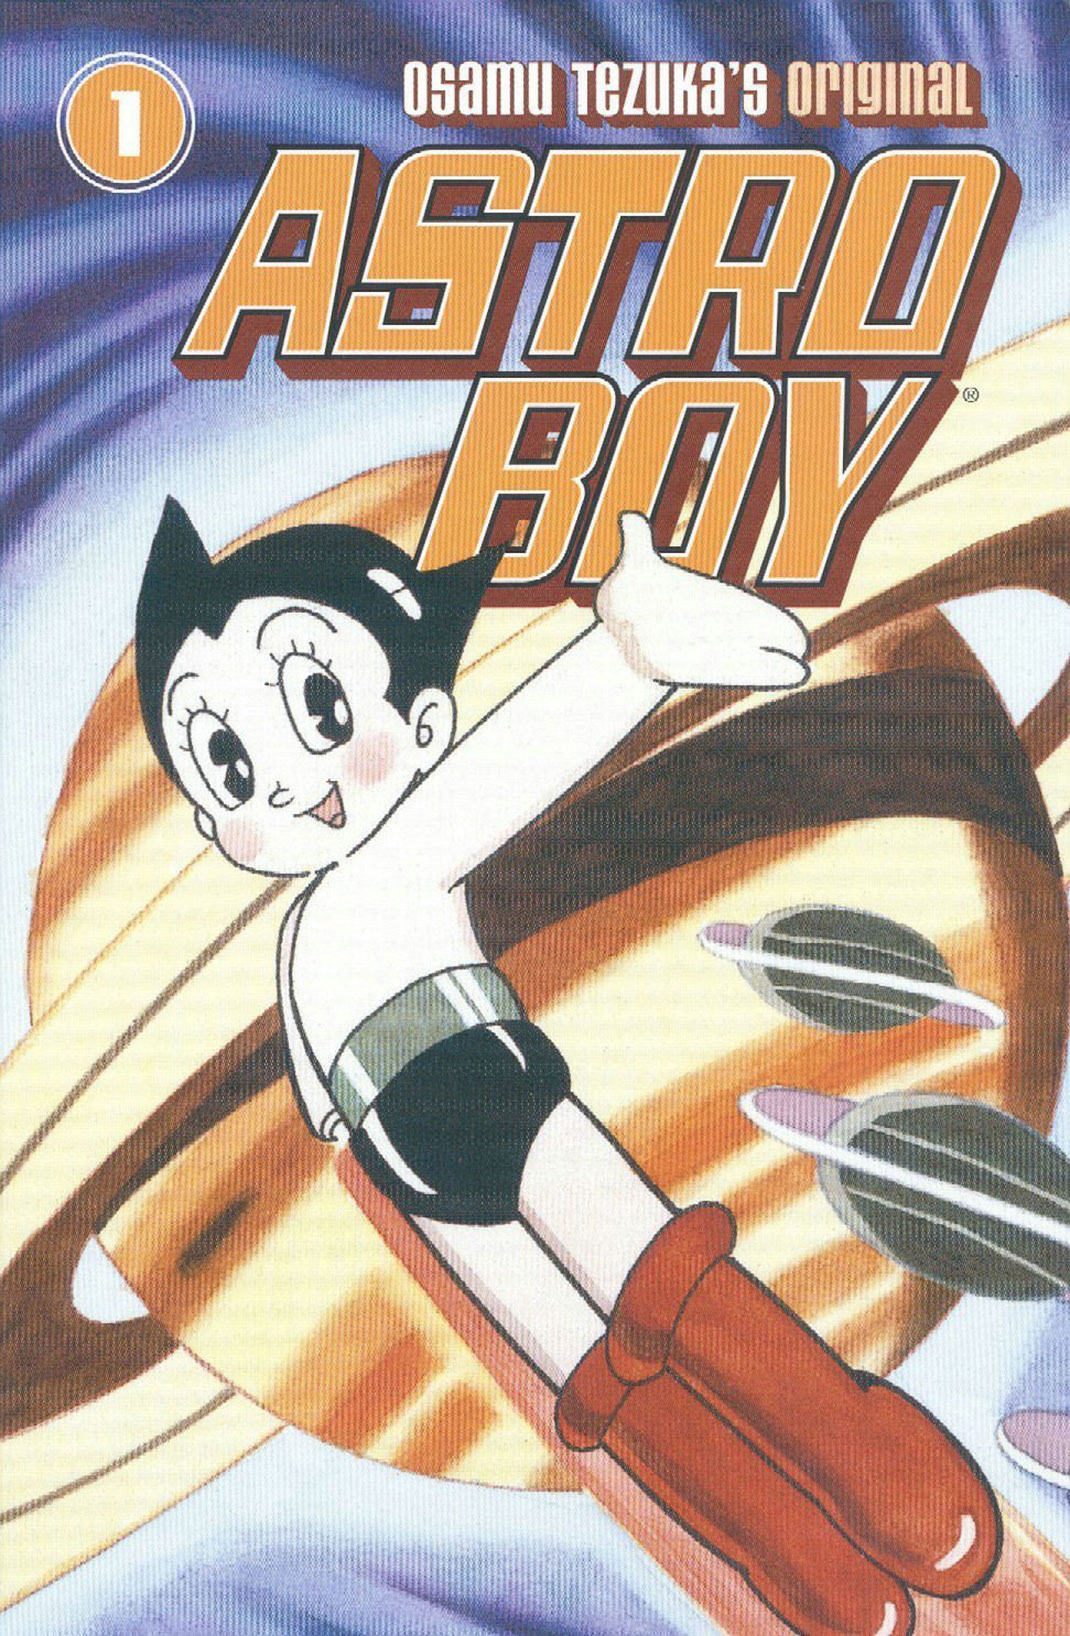 Envolez-vous avec Astro Boy, le petit robot emblématique qui a marqué l